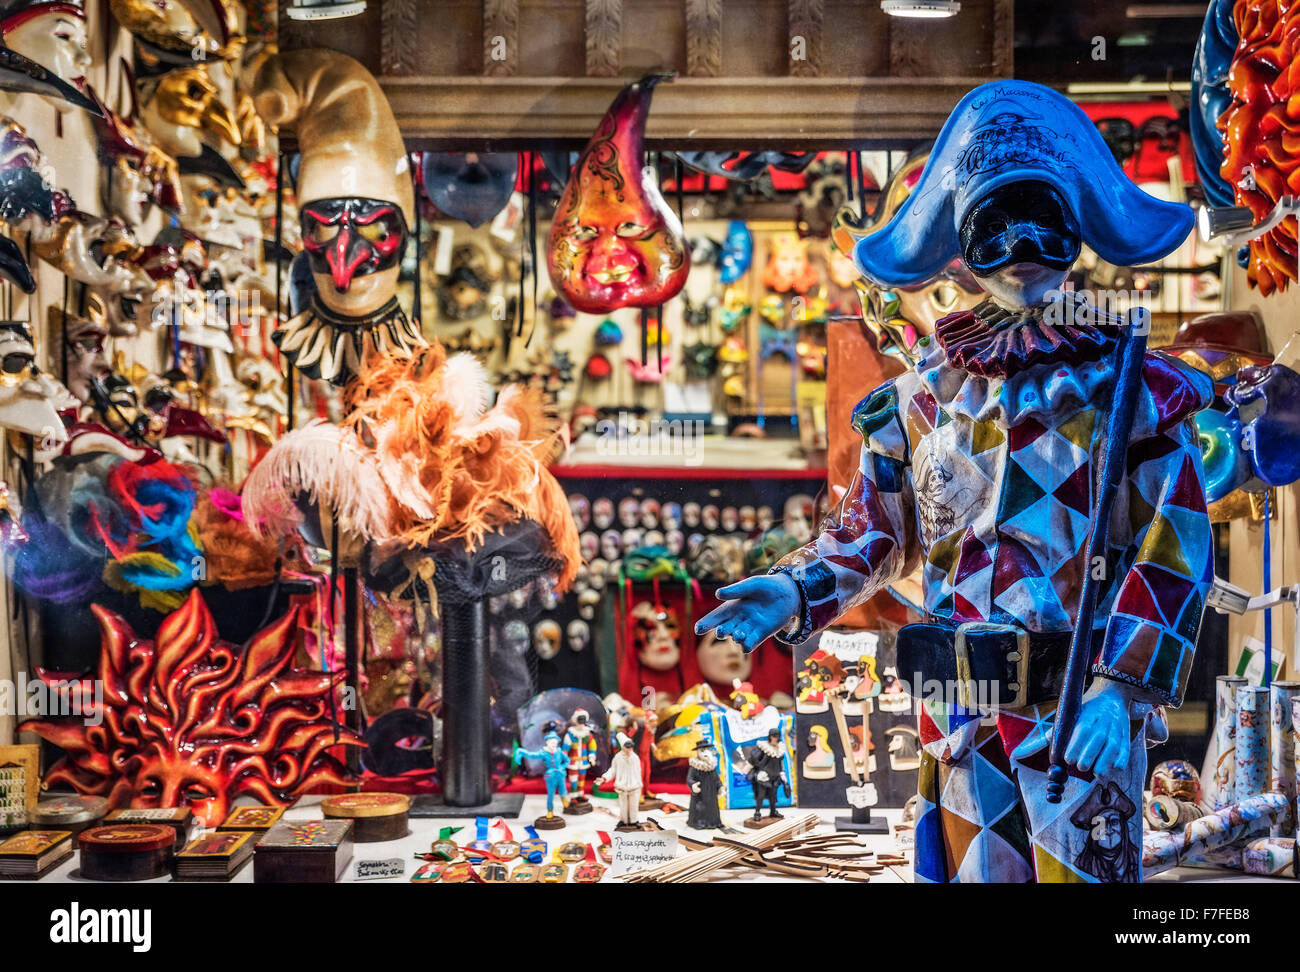 Carnevale souvenir shop, Venice, Italy Stock Photo